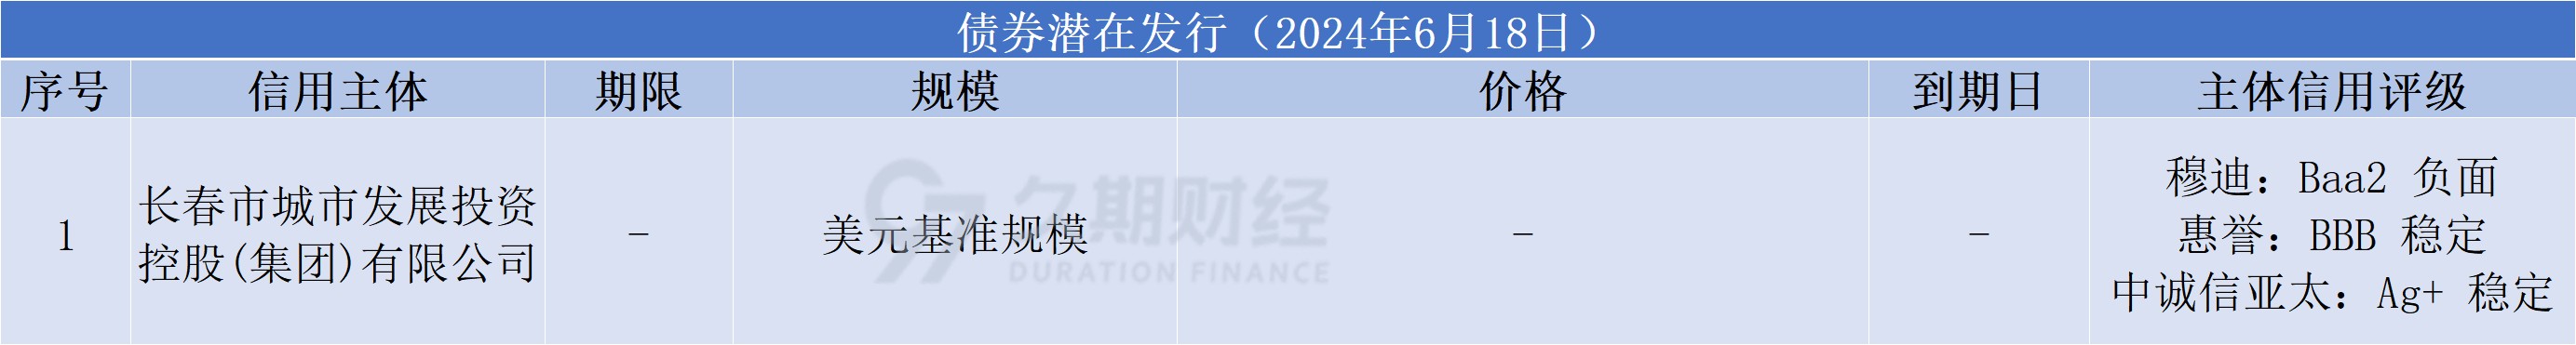 中资离岸债每日总结(6.18)|中国银行(03988.HK)、临港集团等发行